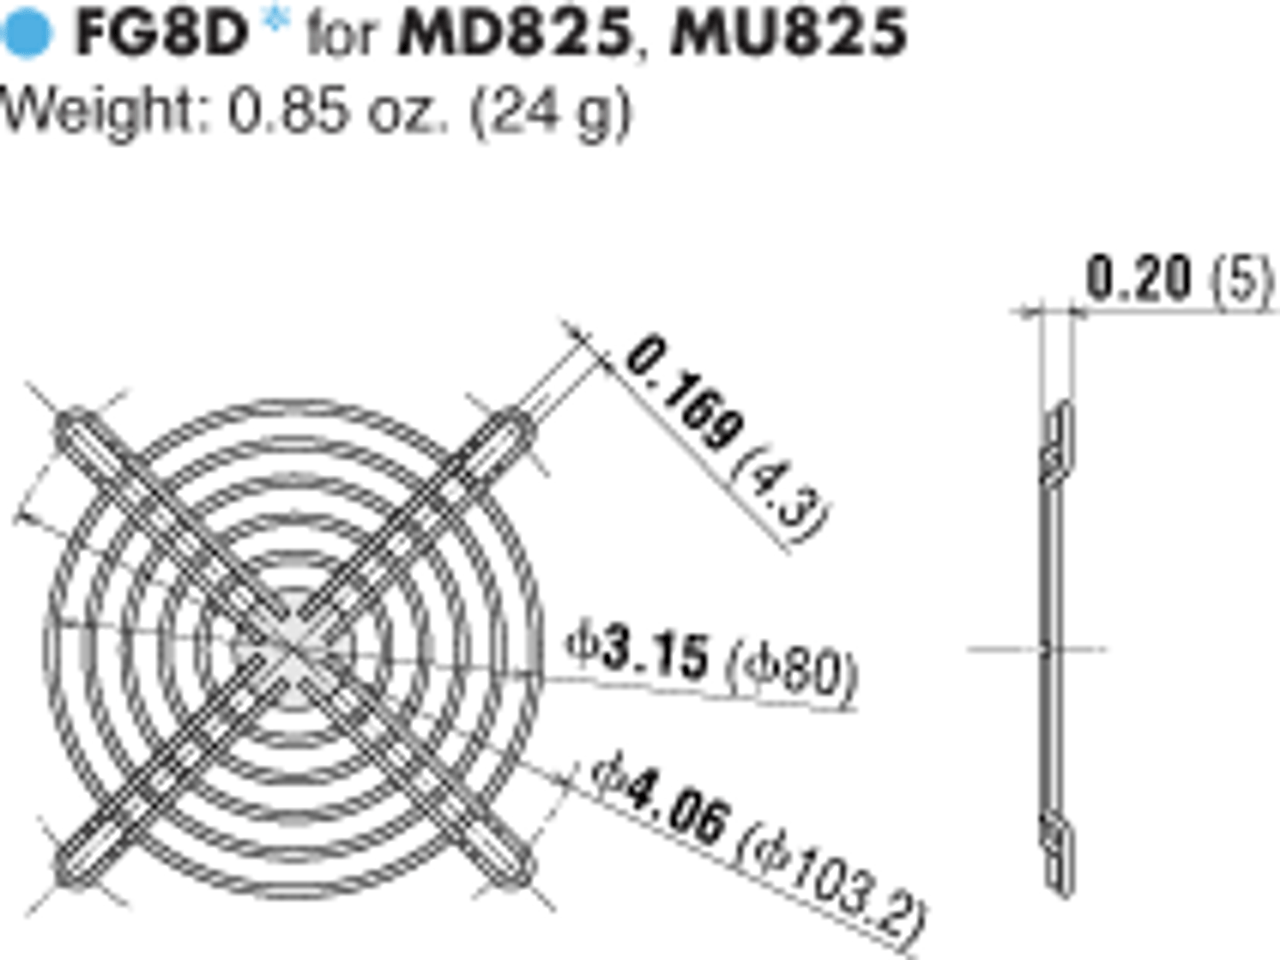 T-MU825S-23-G - Dimensions